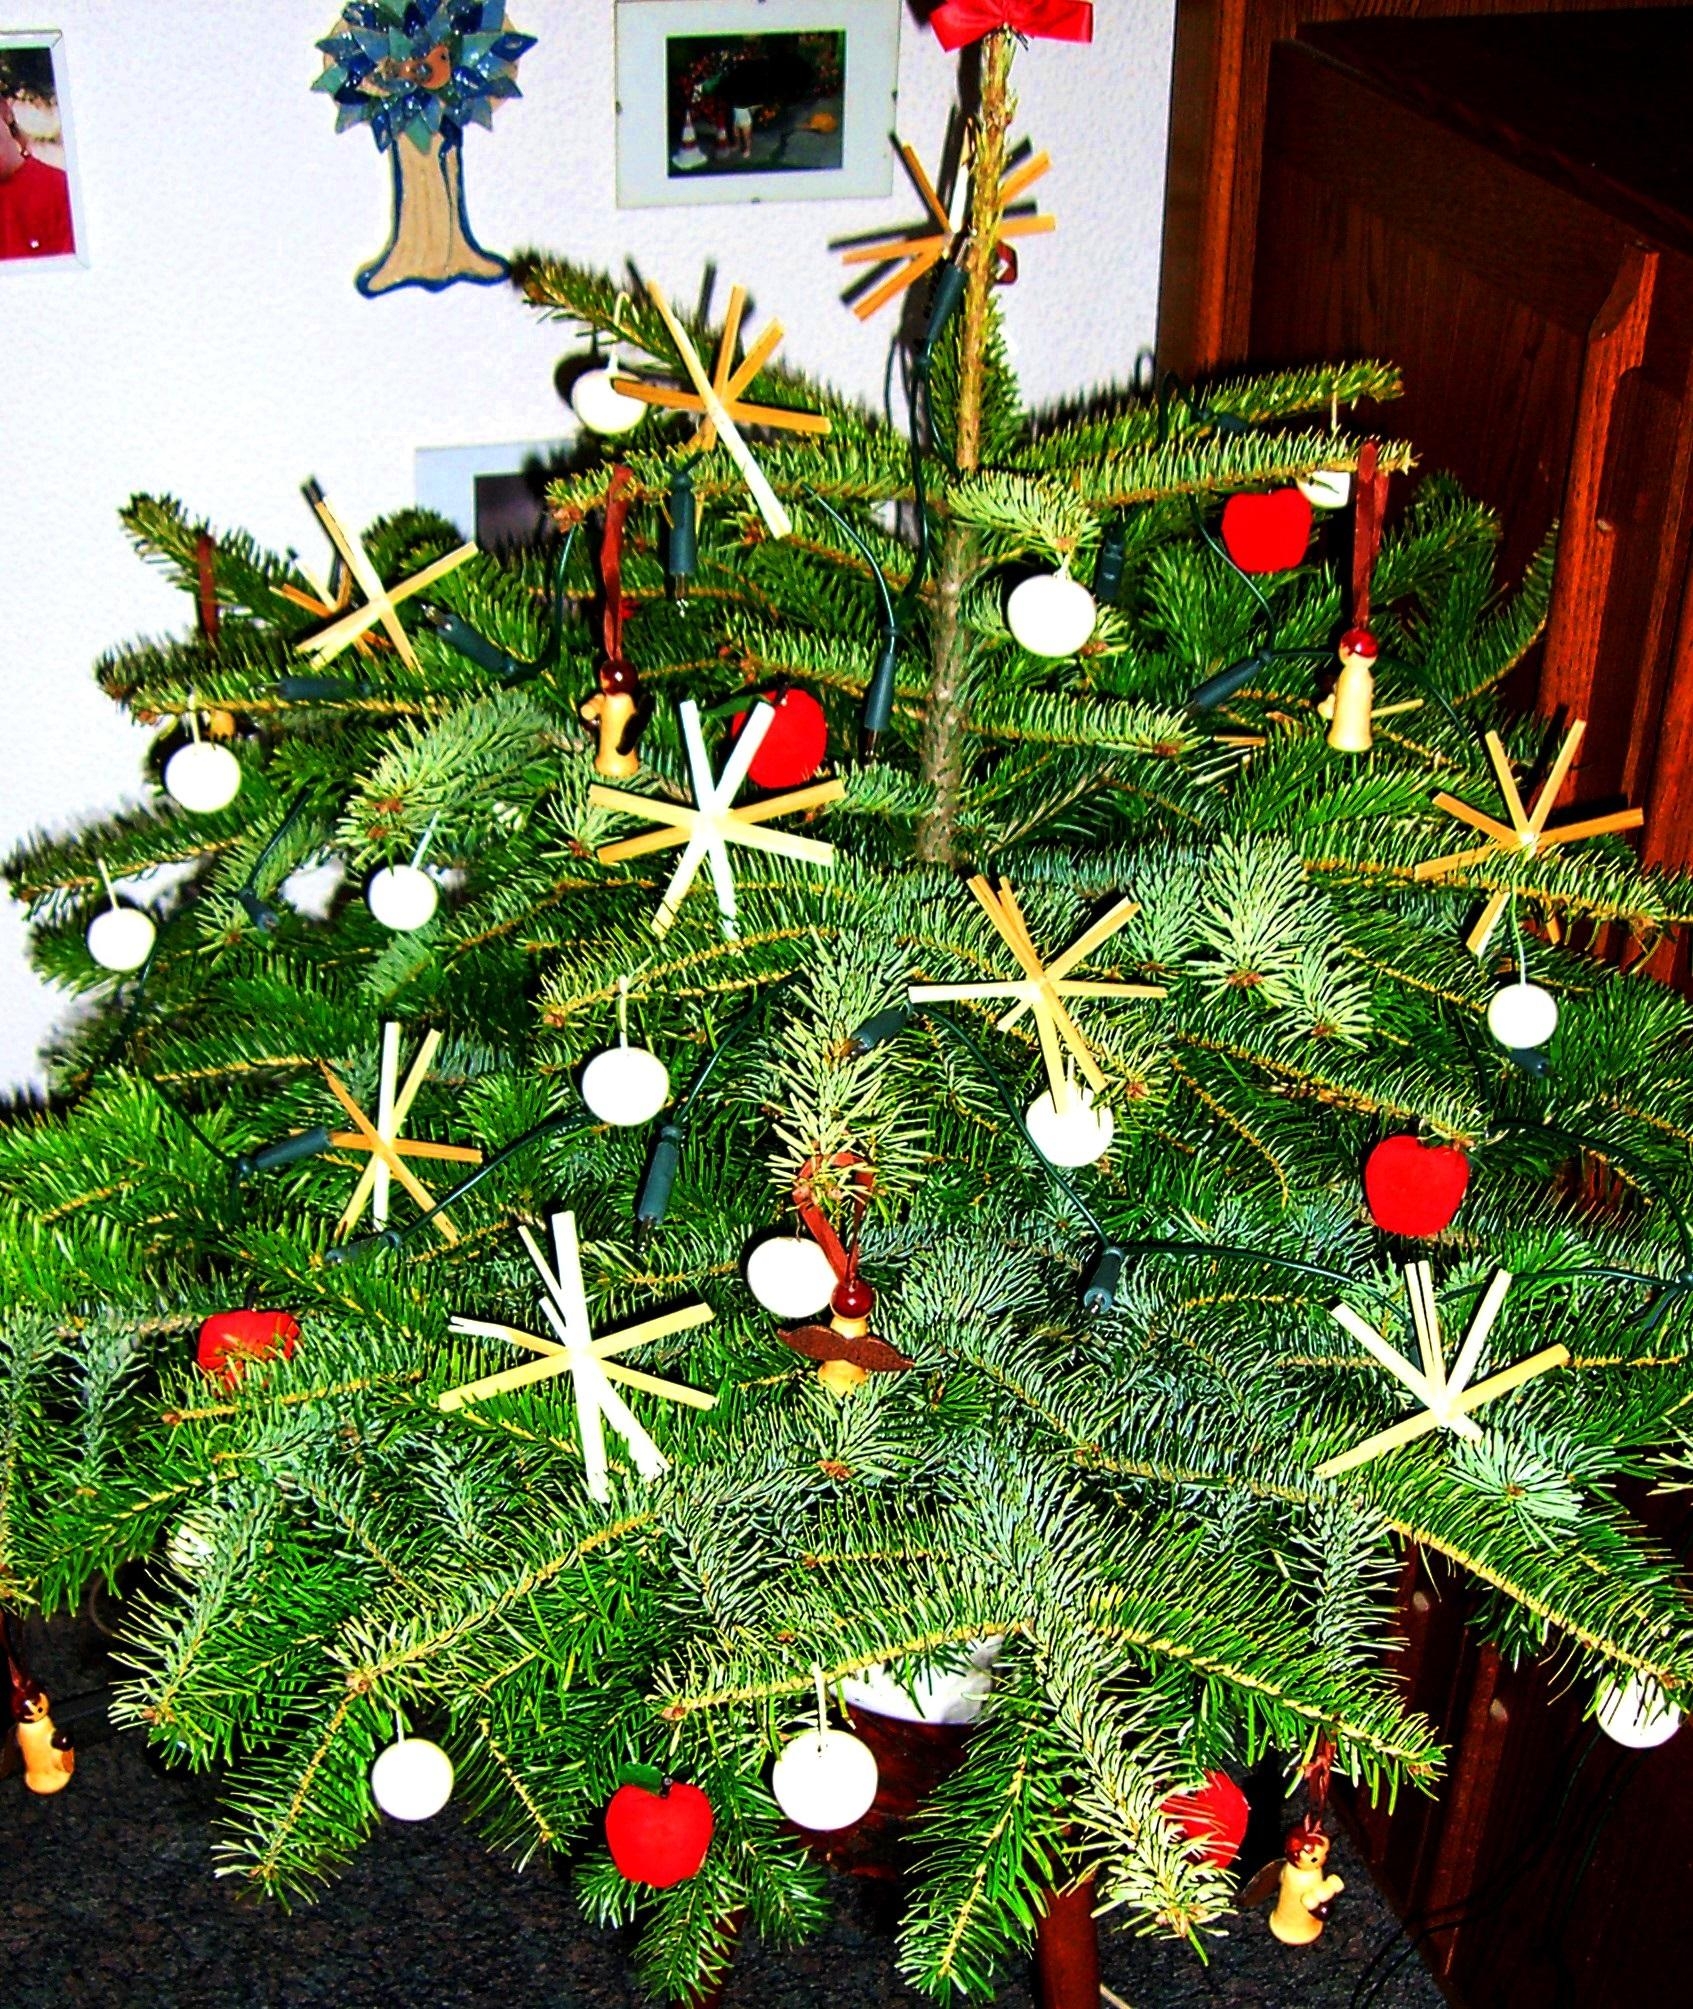 #weihnachtsbaum #weihnachtsdeko #weihnachten #advent Baumbehang selbst hergestellt von einem kleinen Kind